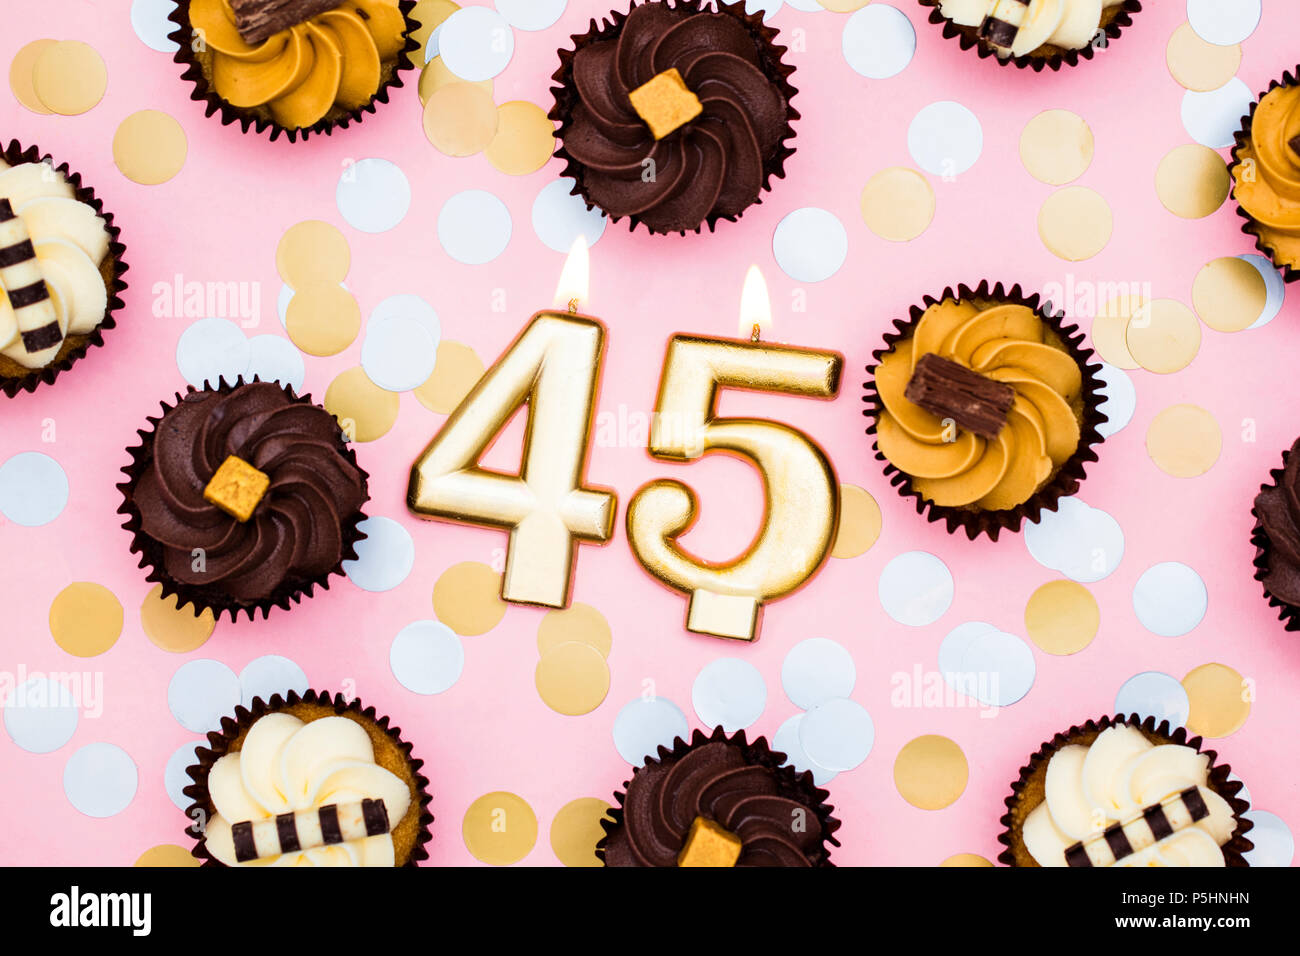 Nummer 45 gold Kerze mit Cupcakes gegen ein Pastell rosa Hintergrund Stockfoto